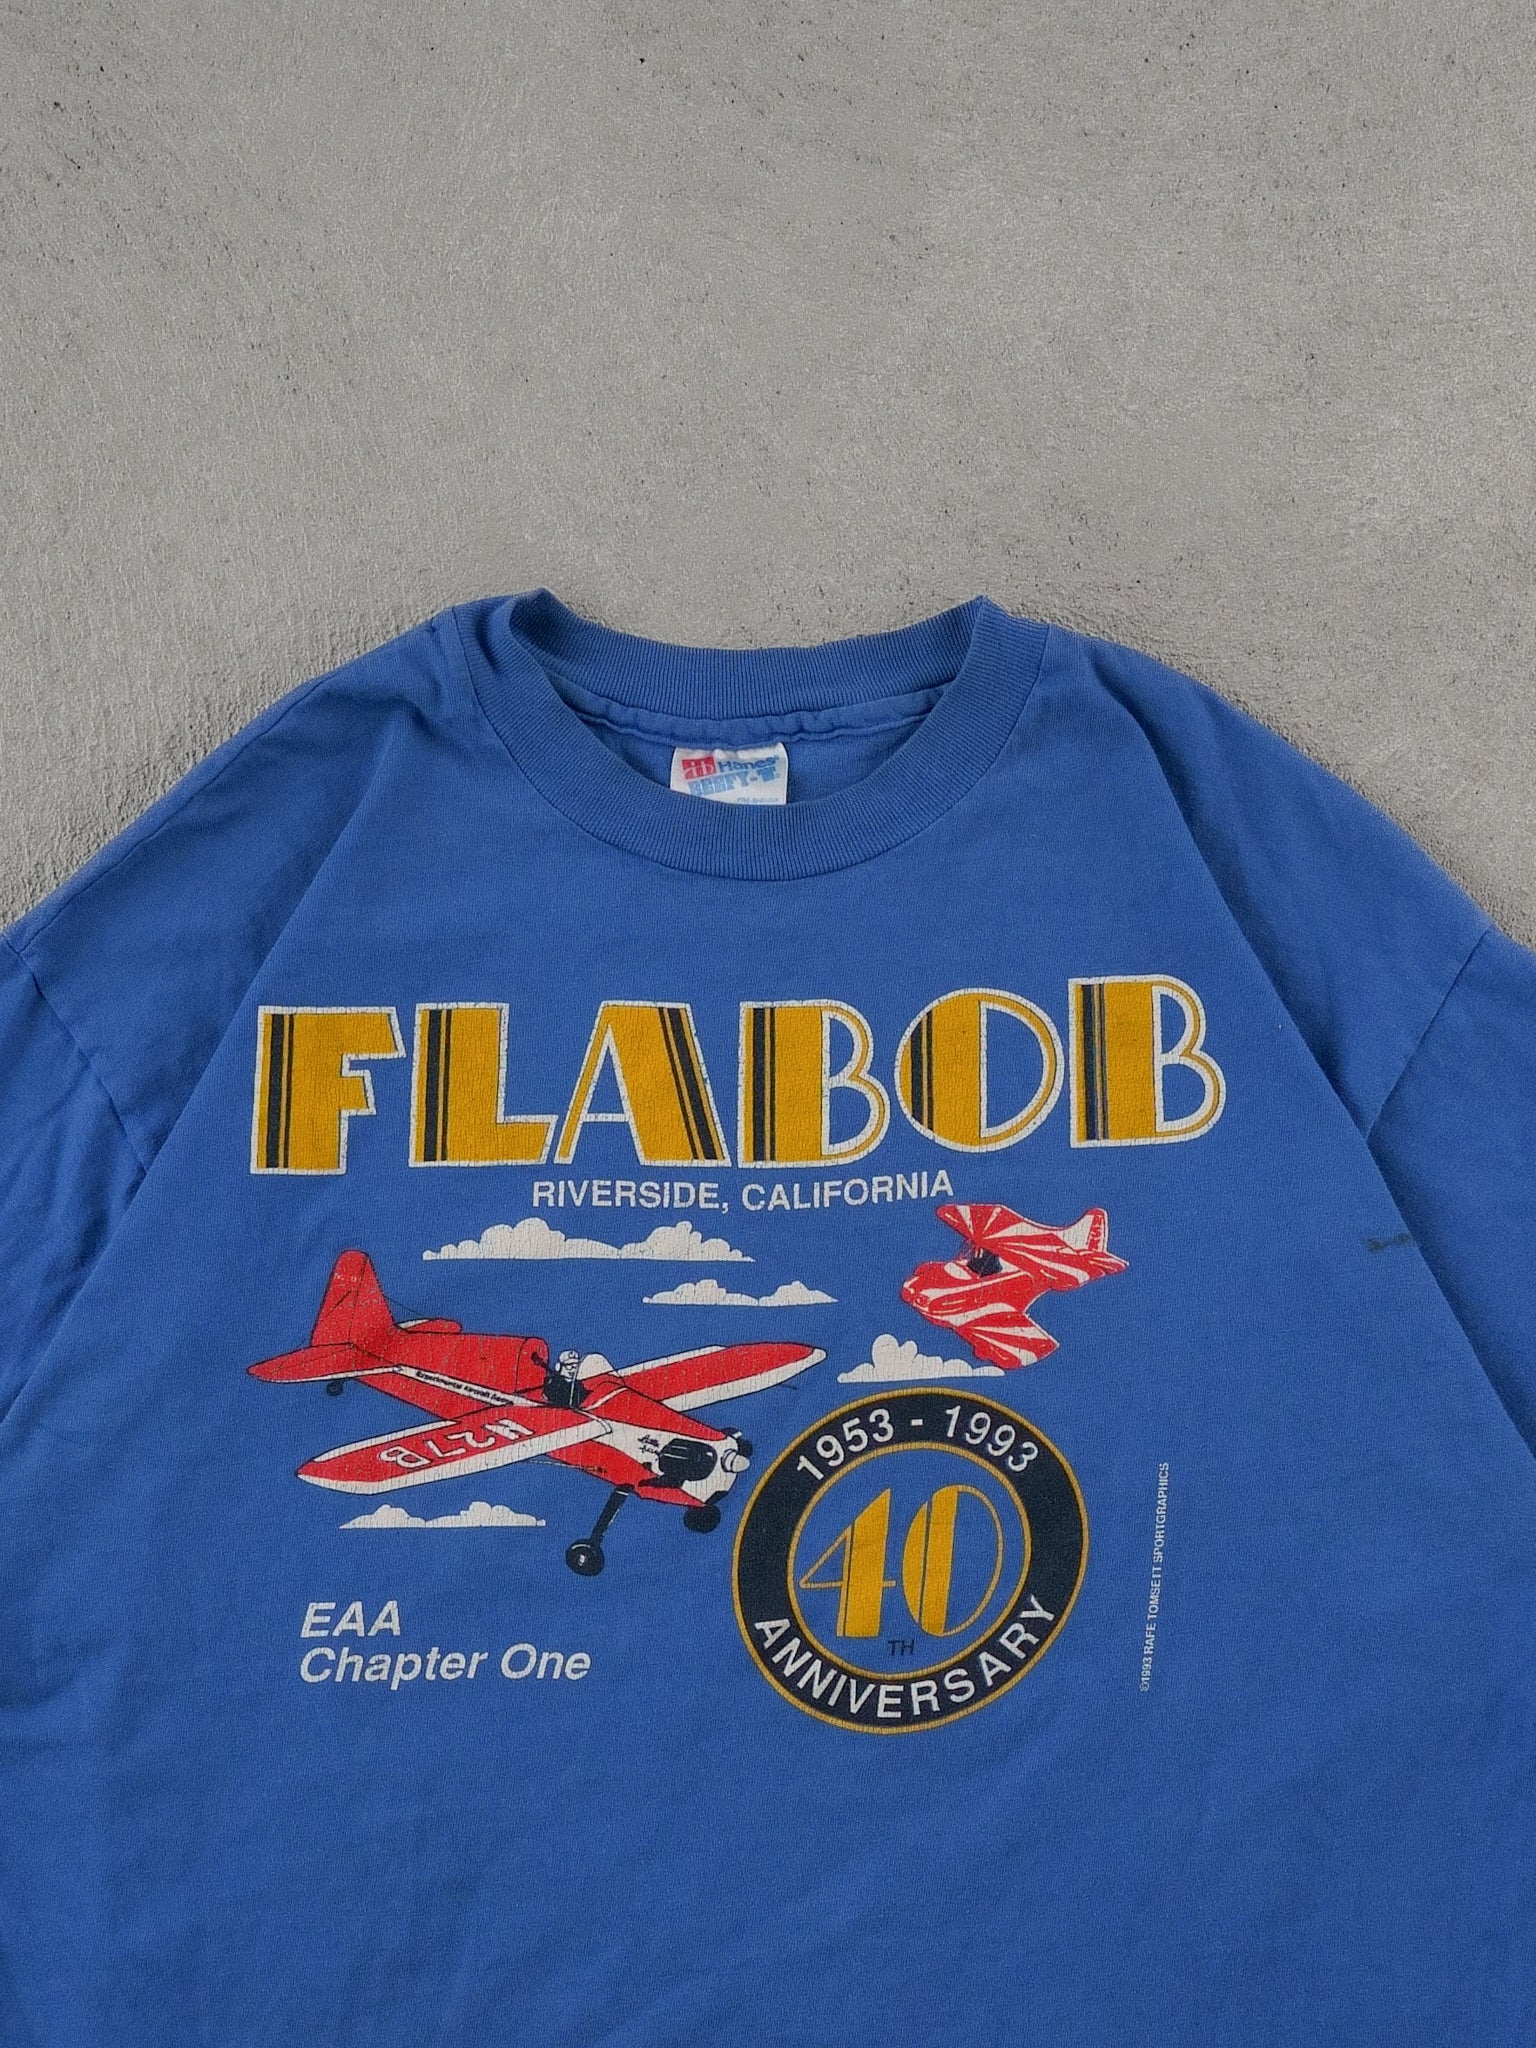 Vintage 93' Blue Flabob Plane Graphic Tee (M/L)